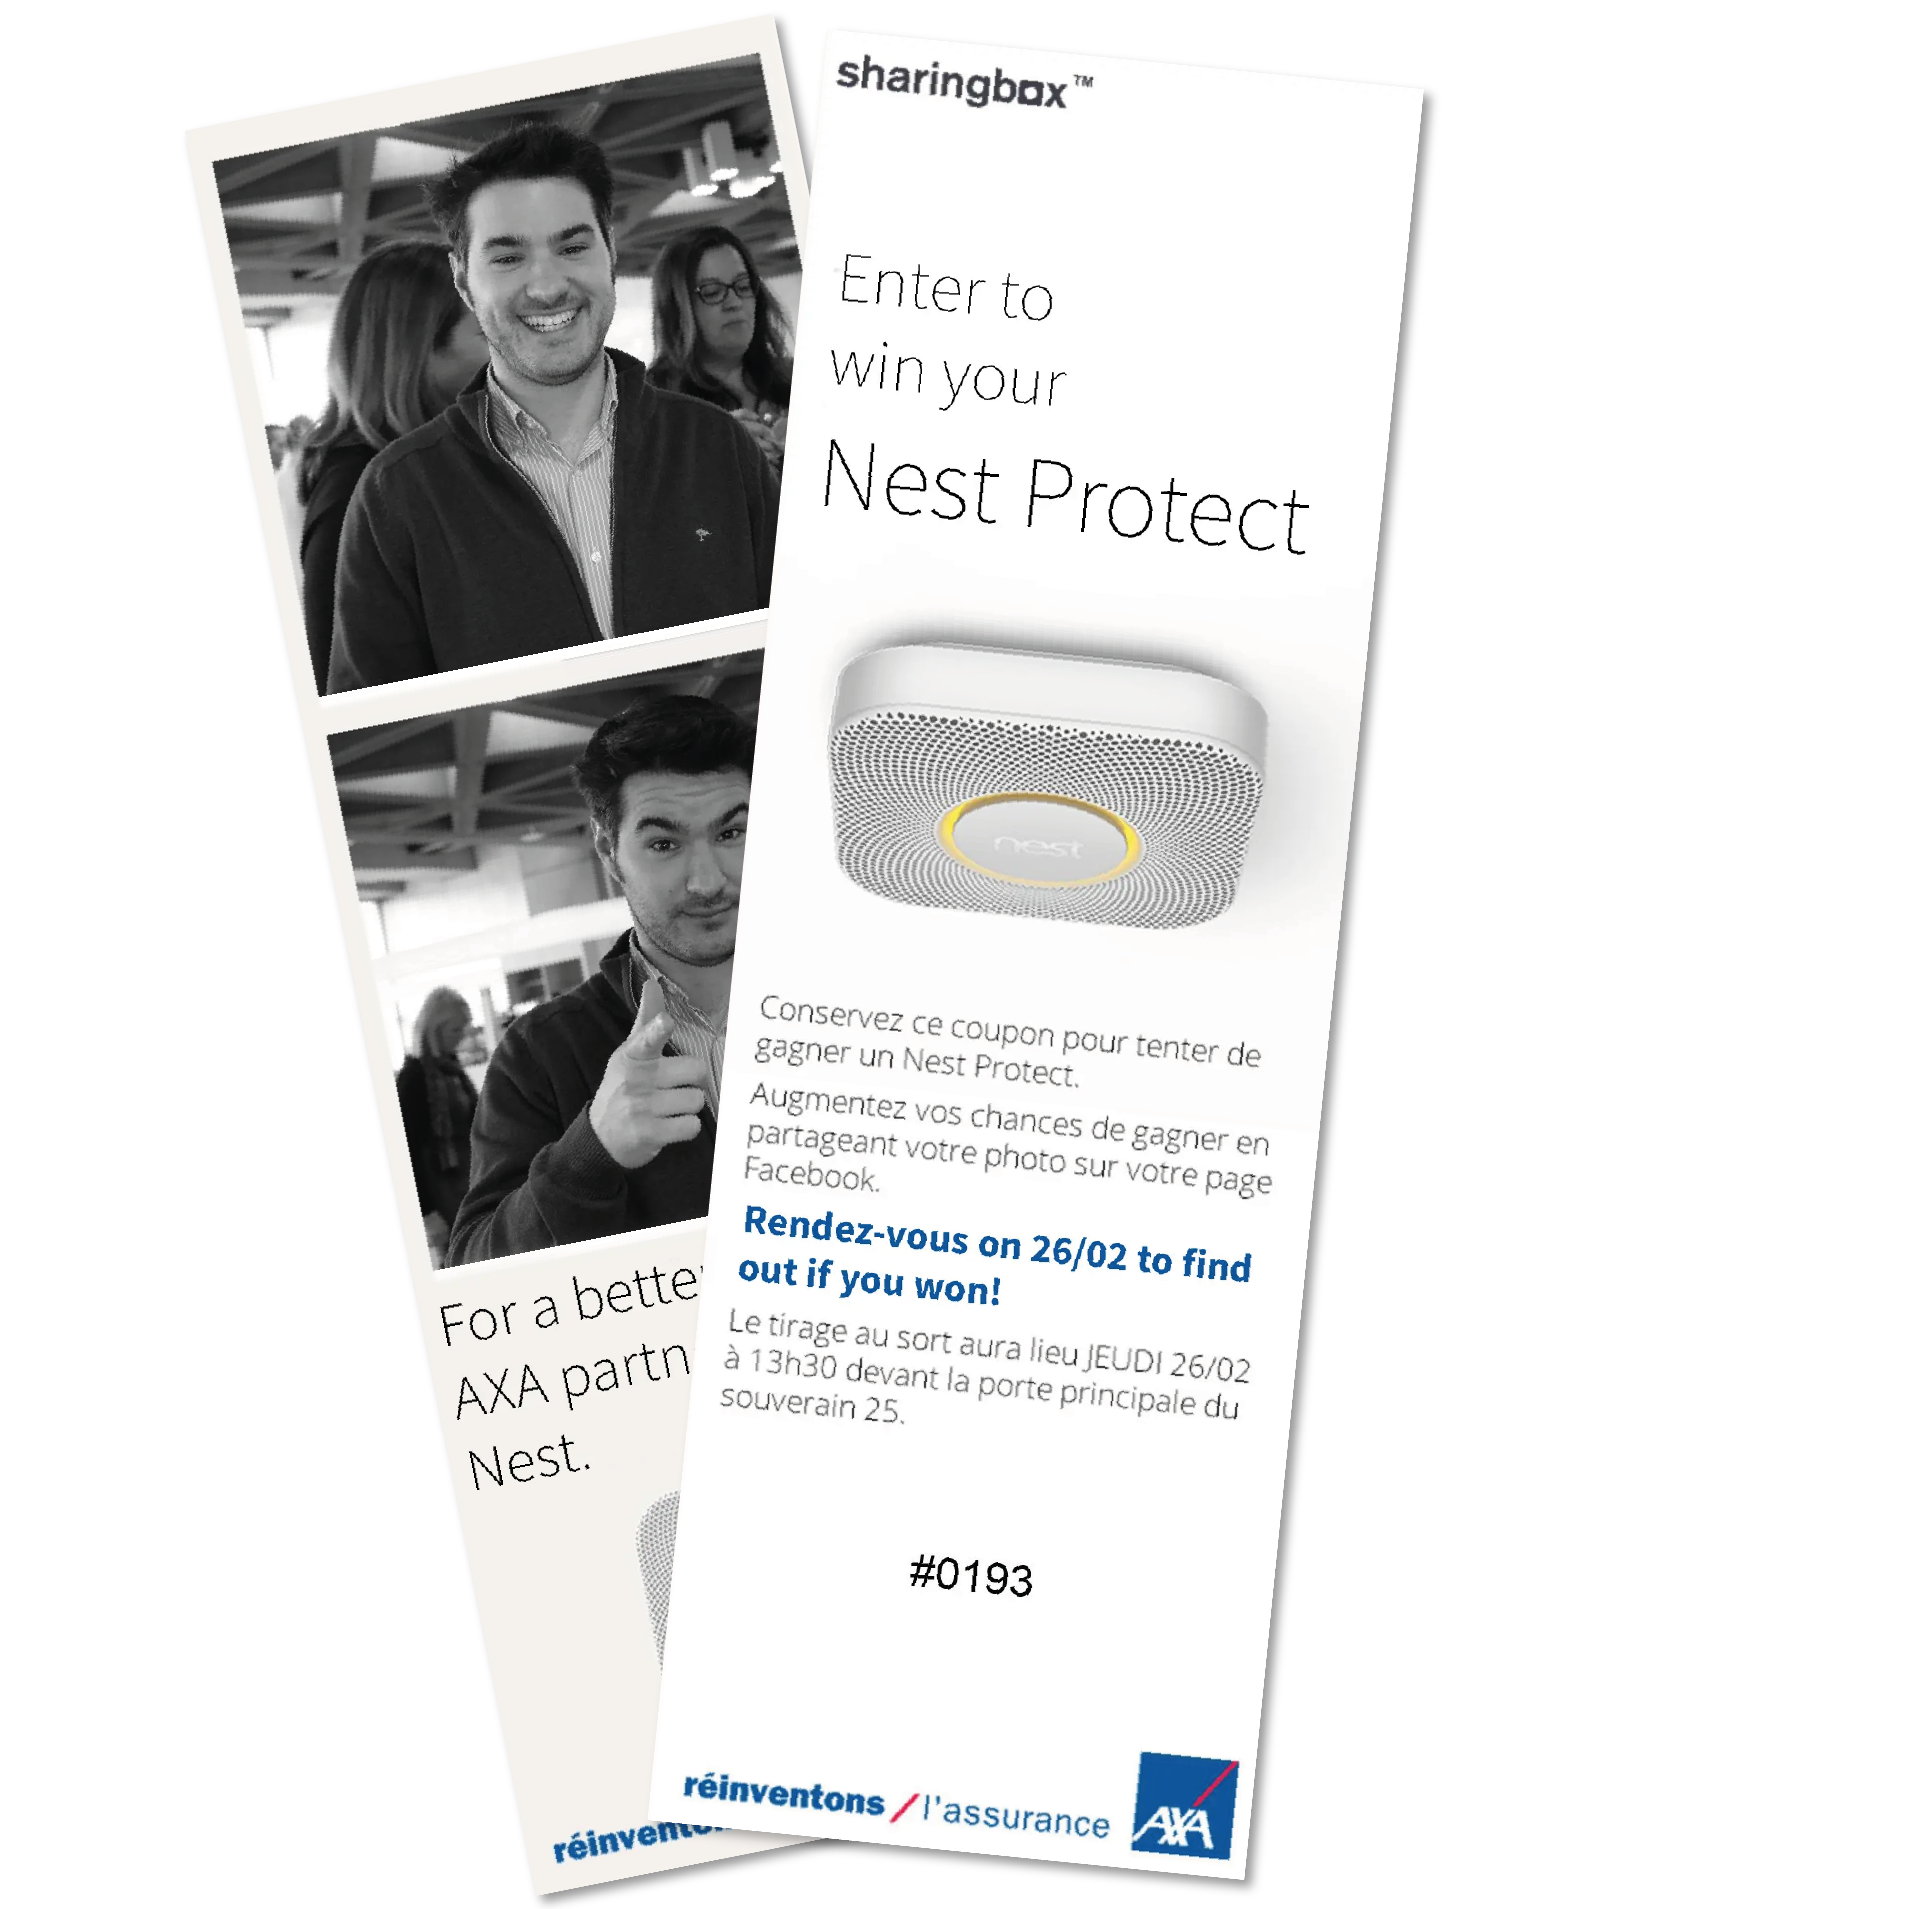 Un dépliant promotionnel de sharingbox représentant un jeune homme, avec les détails d'un événement de distribution de Nest Protect en partenariat avec l'assurance AXA.